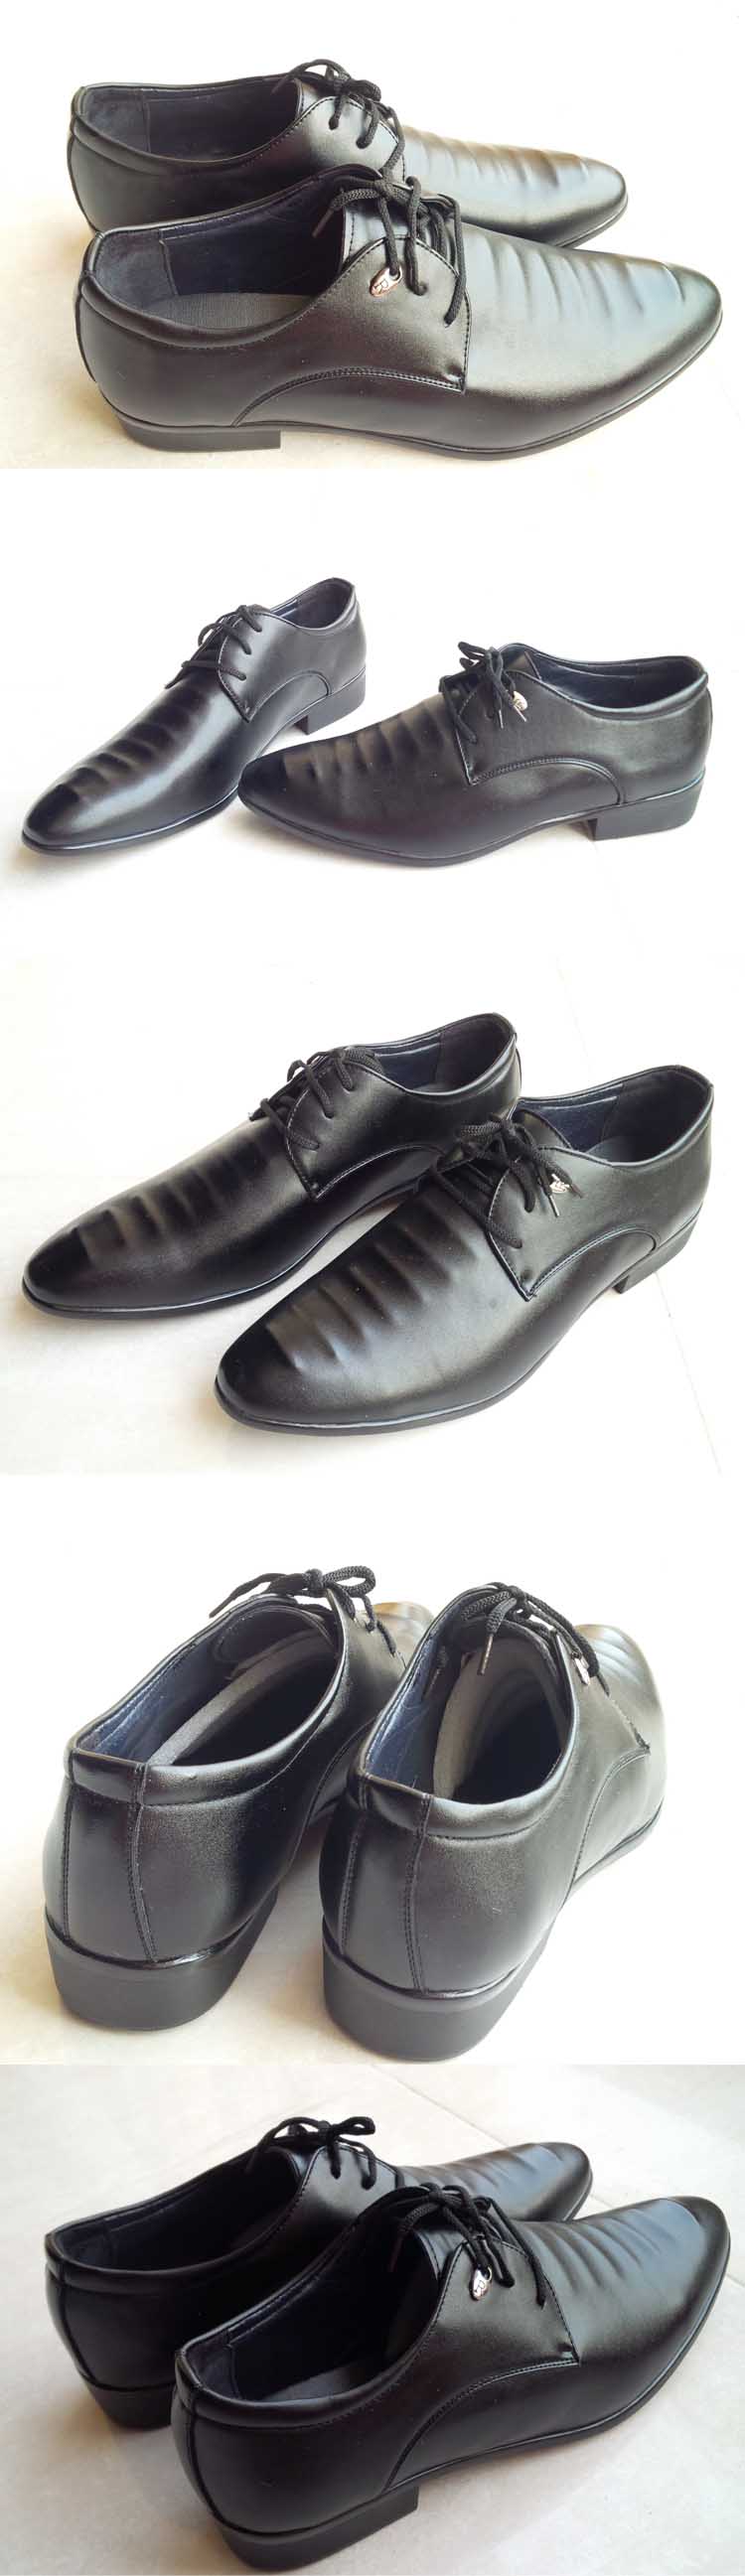 cari sepatu kulit pria keren dan berkualitas hanya ada di store.pakaianfashionpria.com klik dan pesan online